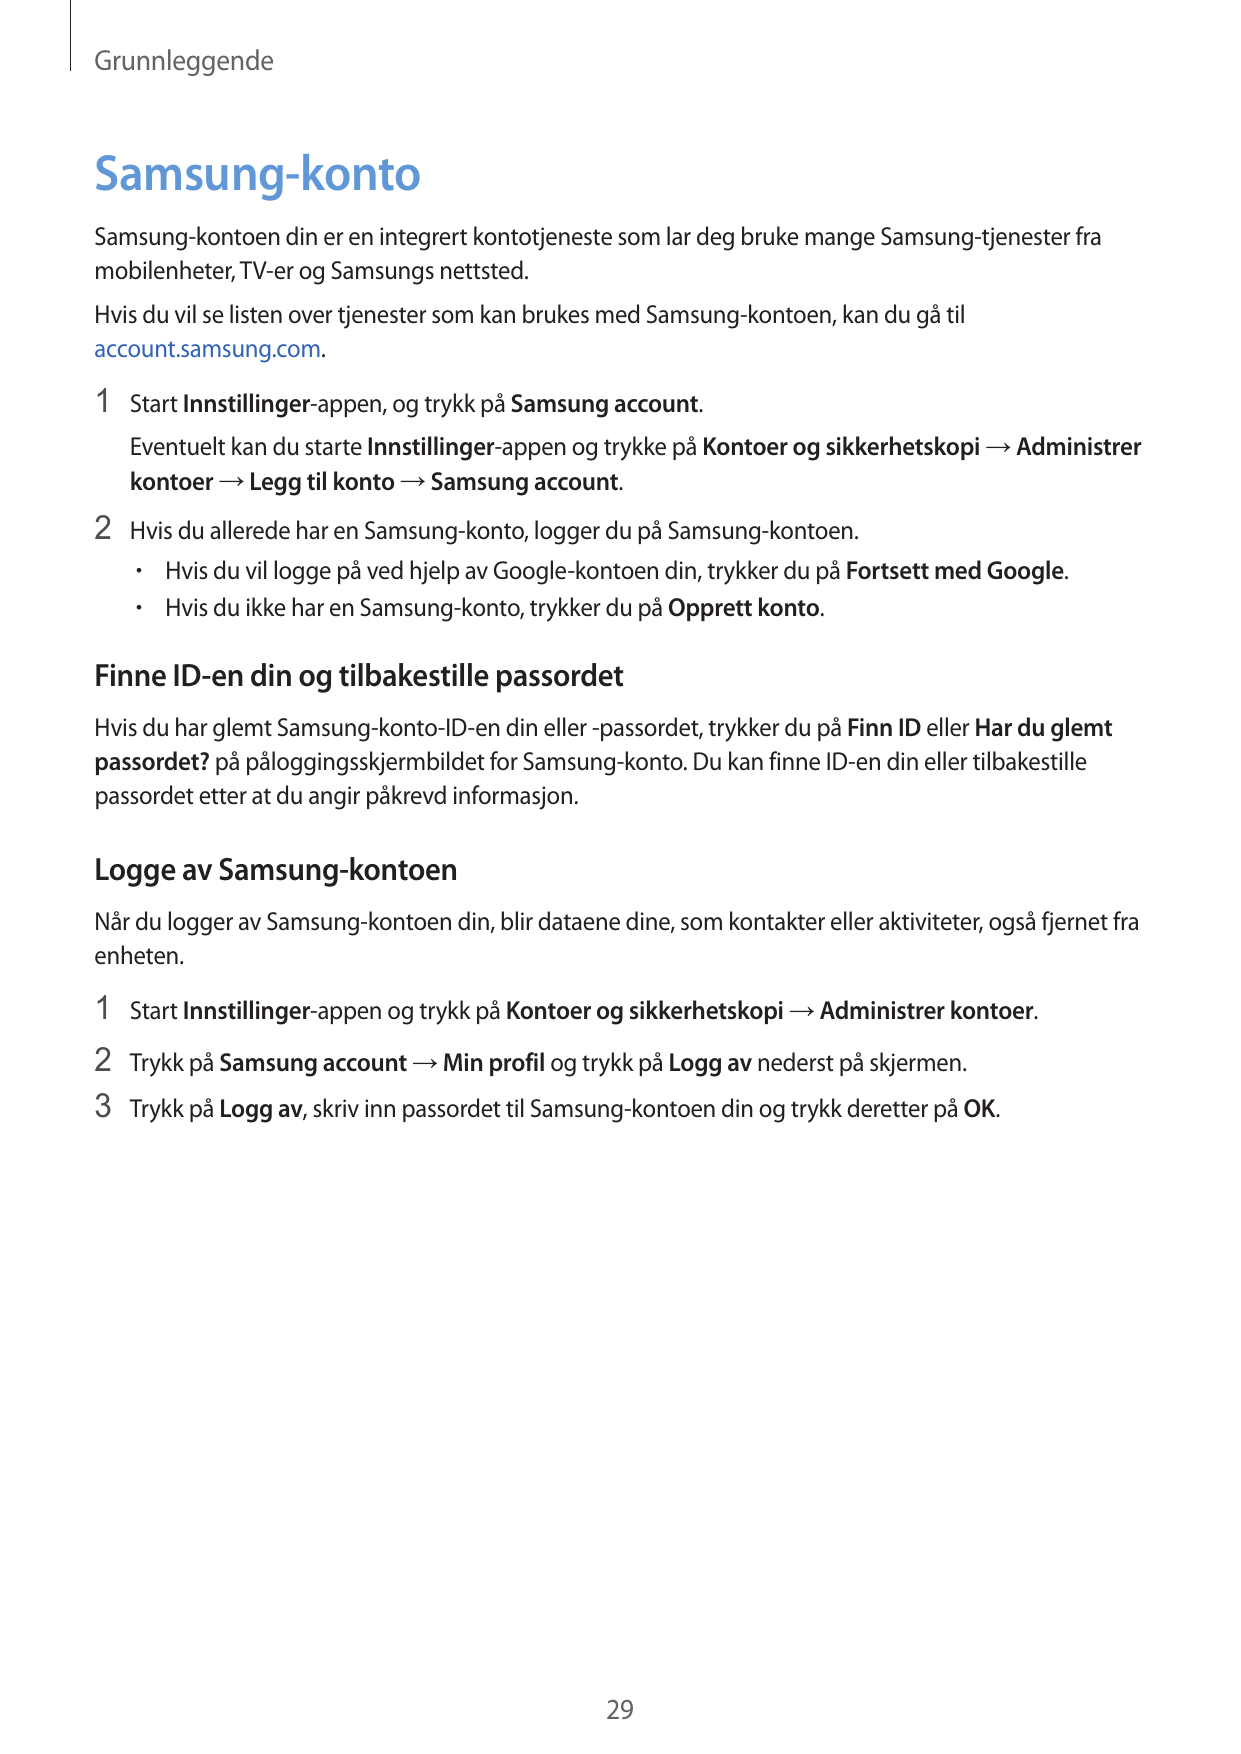 GrunnleggendeSamsung-kontoSamsung-kontoen din er en integrert kontotjeneste som lar deg bruke mange Samsung-tjenester framobilen